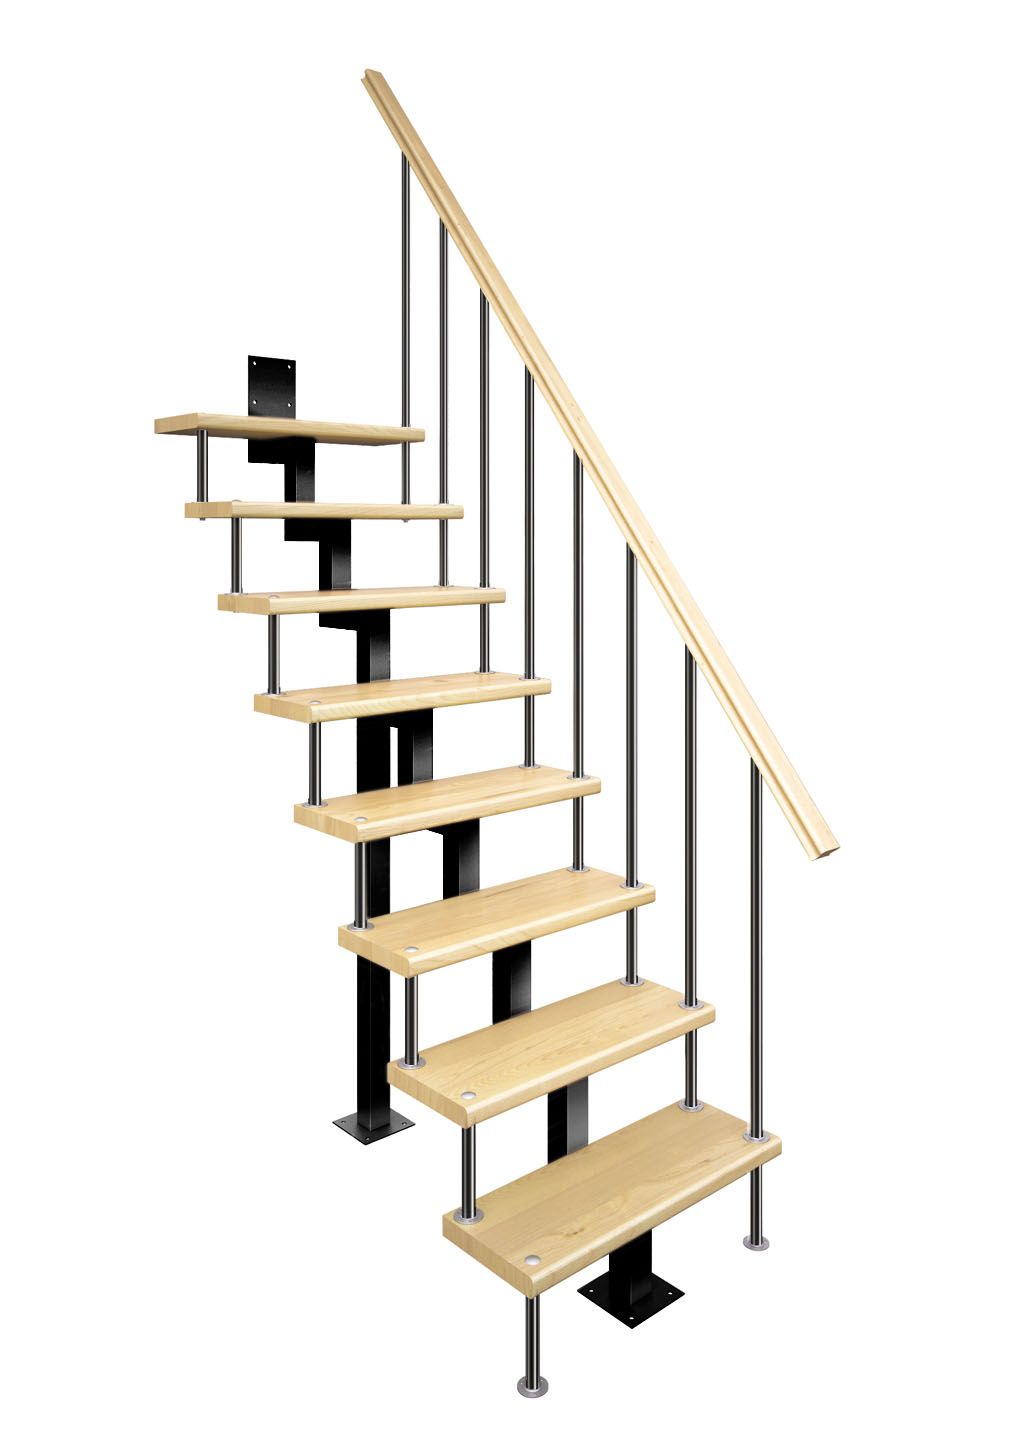 Малогабаритная модульная лестница, купить в Москве, цена на заказ в интернет-магазине